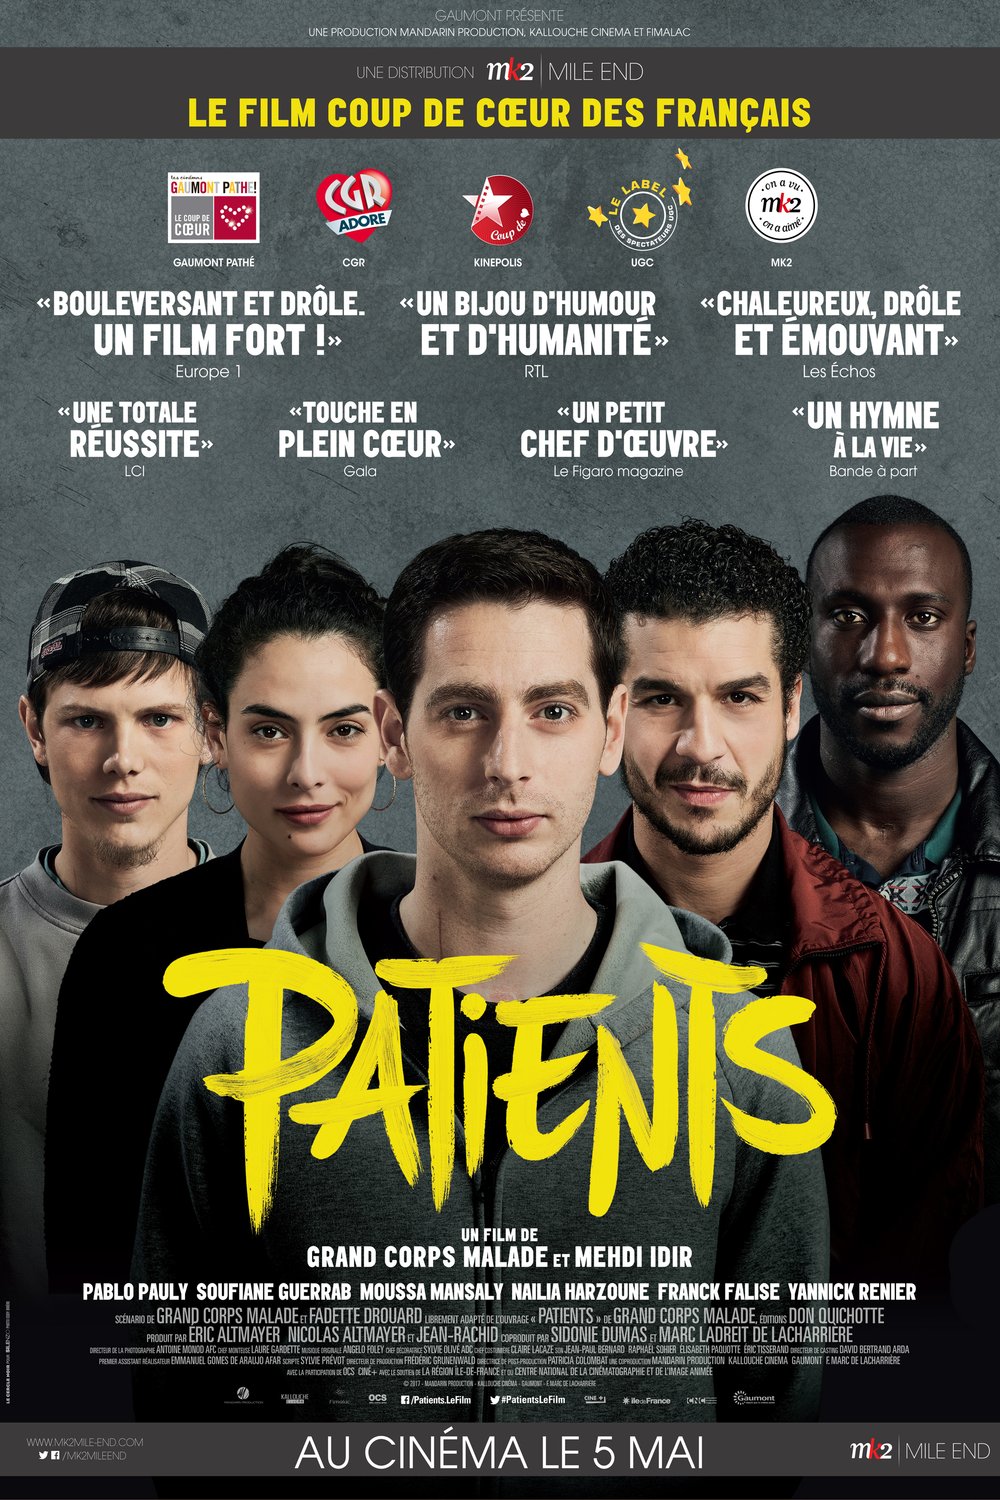 L'affiche du film Patients